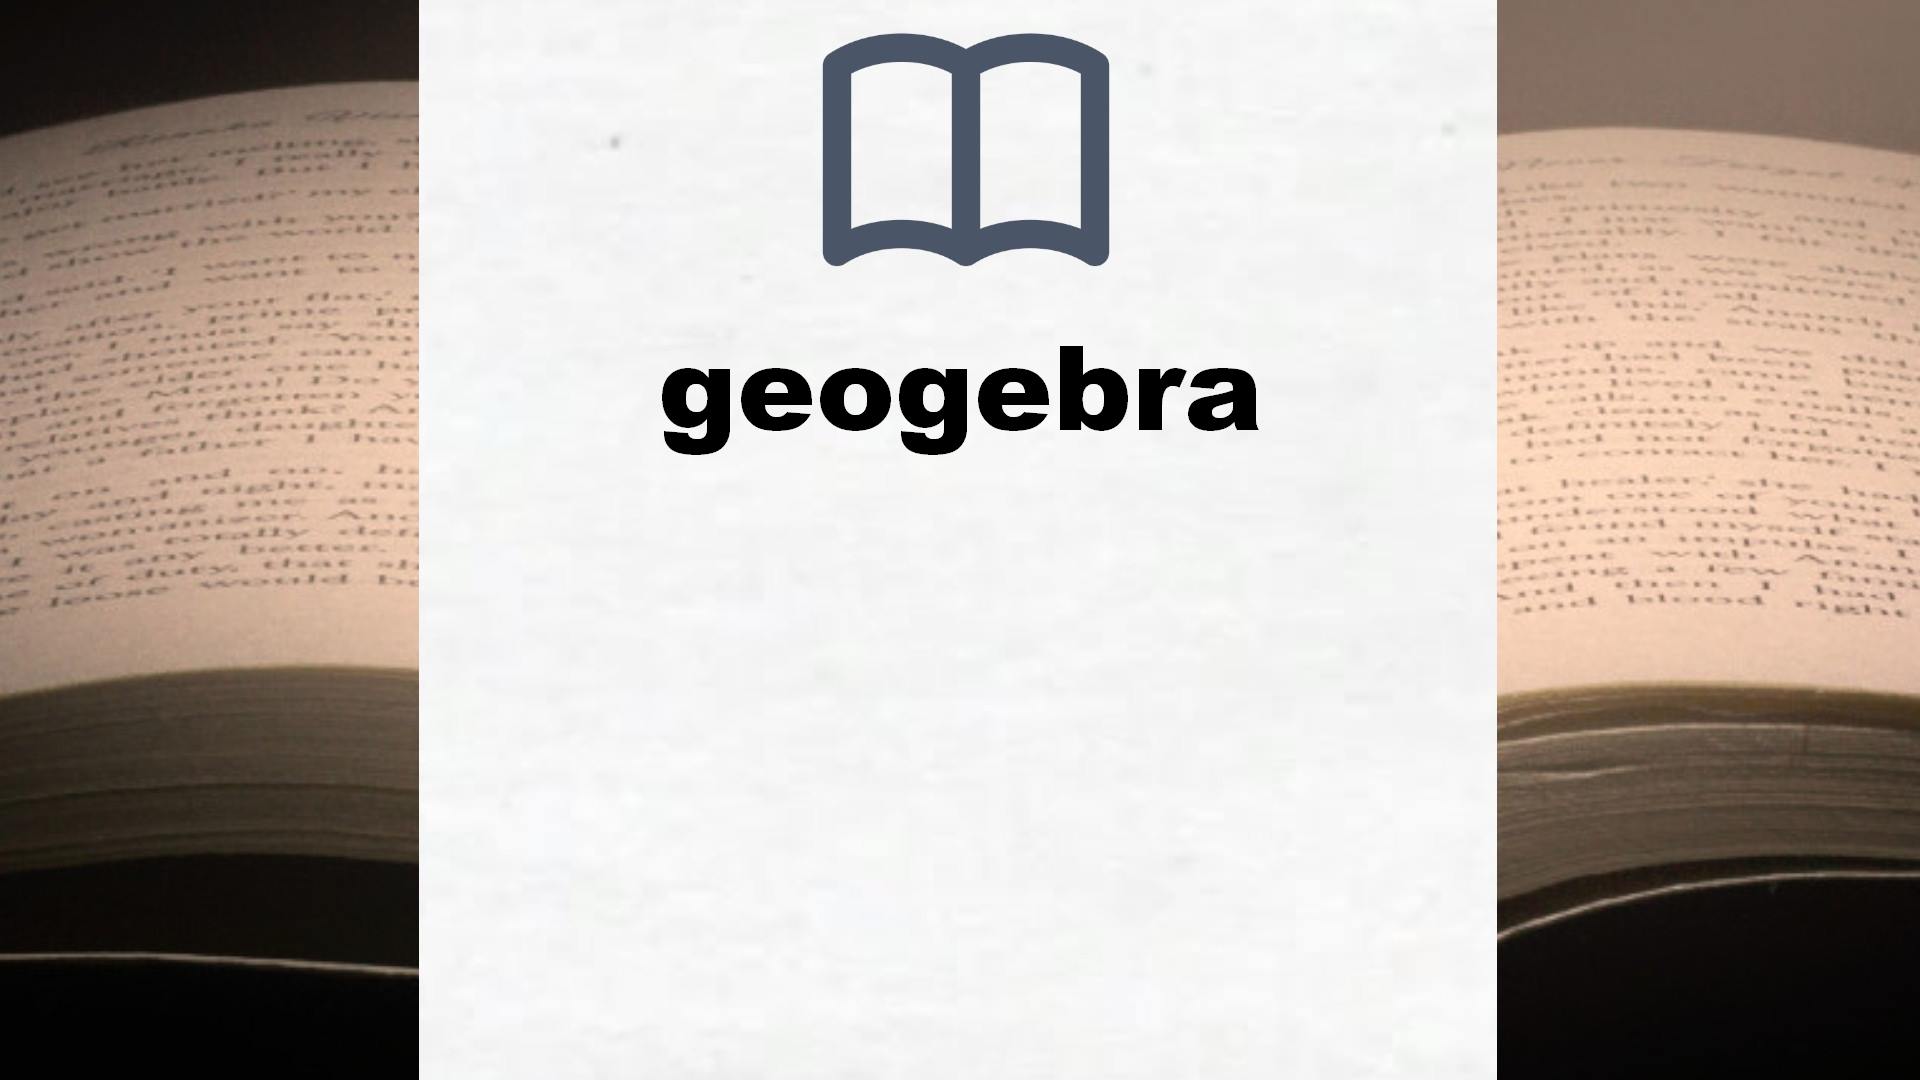 Libros sobre geogebra